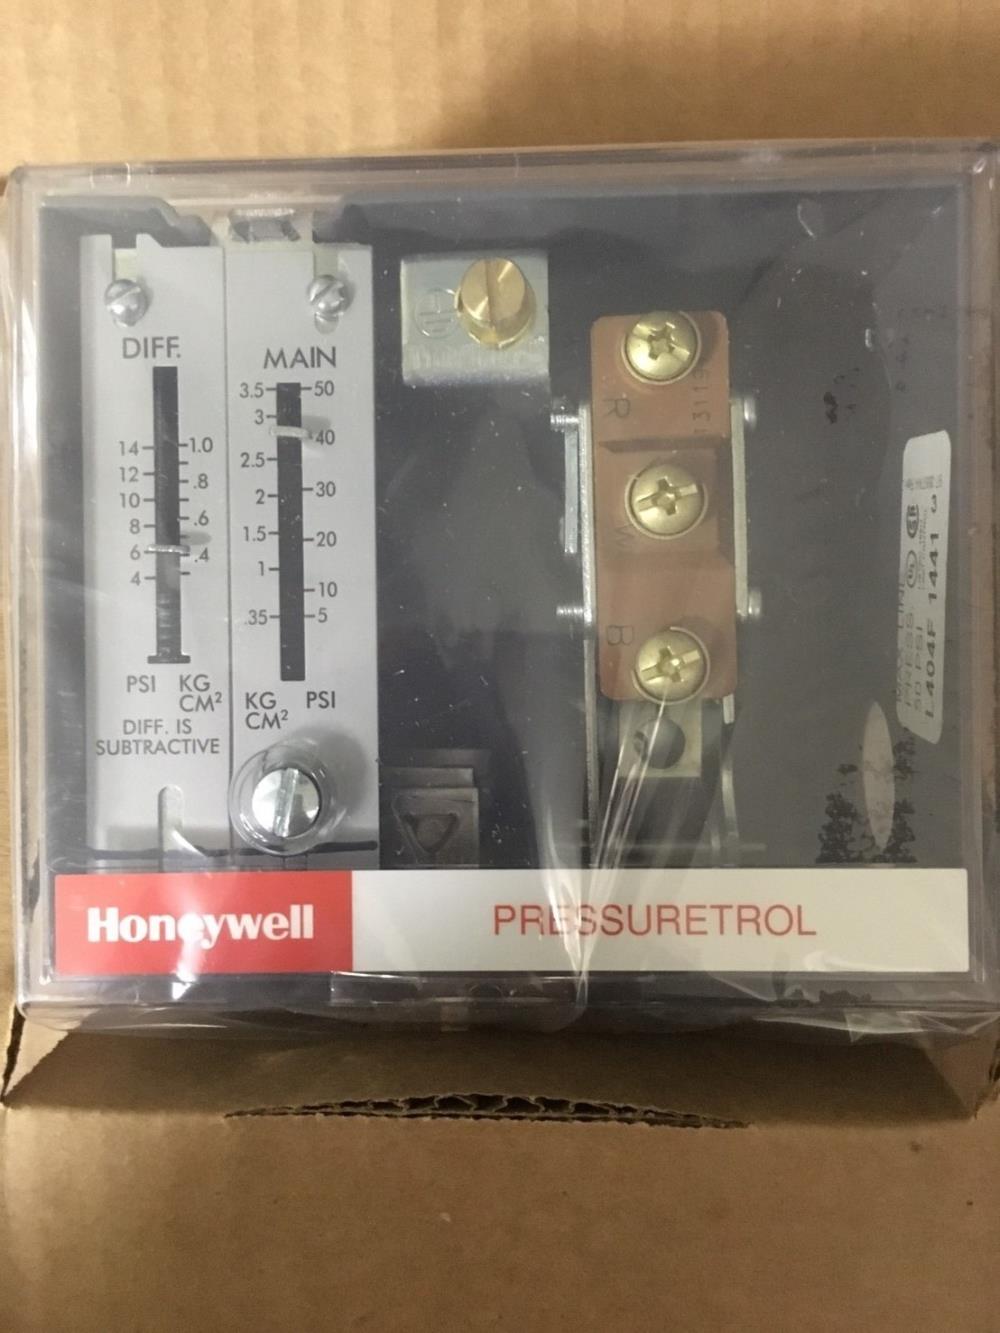 จำหน่าย Pressure Switch Pressuretrol Controller HONEYWELL รุ่น L404F 1441 เพรสเชอร์สวิทช์,  HONEYWELL สวิตช์ควบคุมความดัน,Pressure Switch Pressuretrol Controller HONEYWELL รุ่น L404F 1441 เพรสเชอร์สวิทช์,HONEYWELL,Instruments and Controls/Controllers